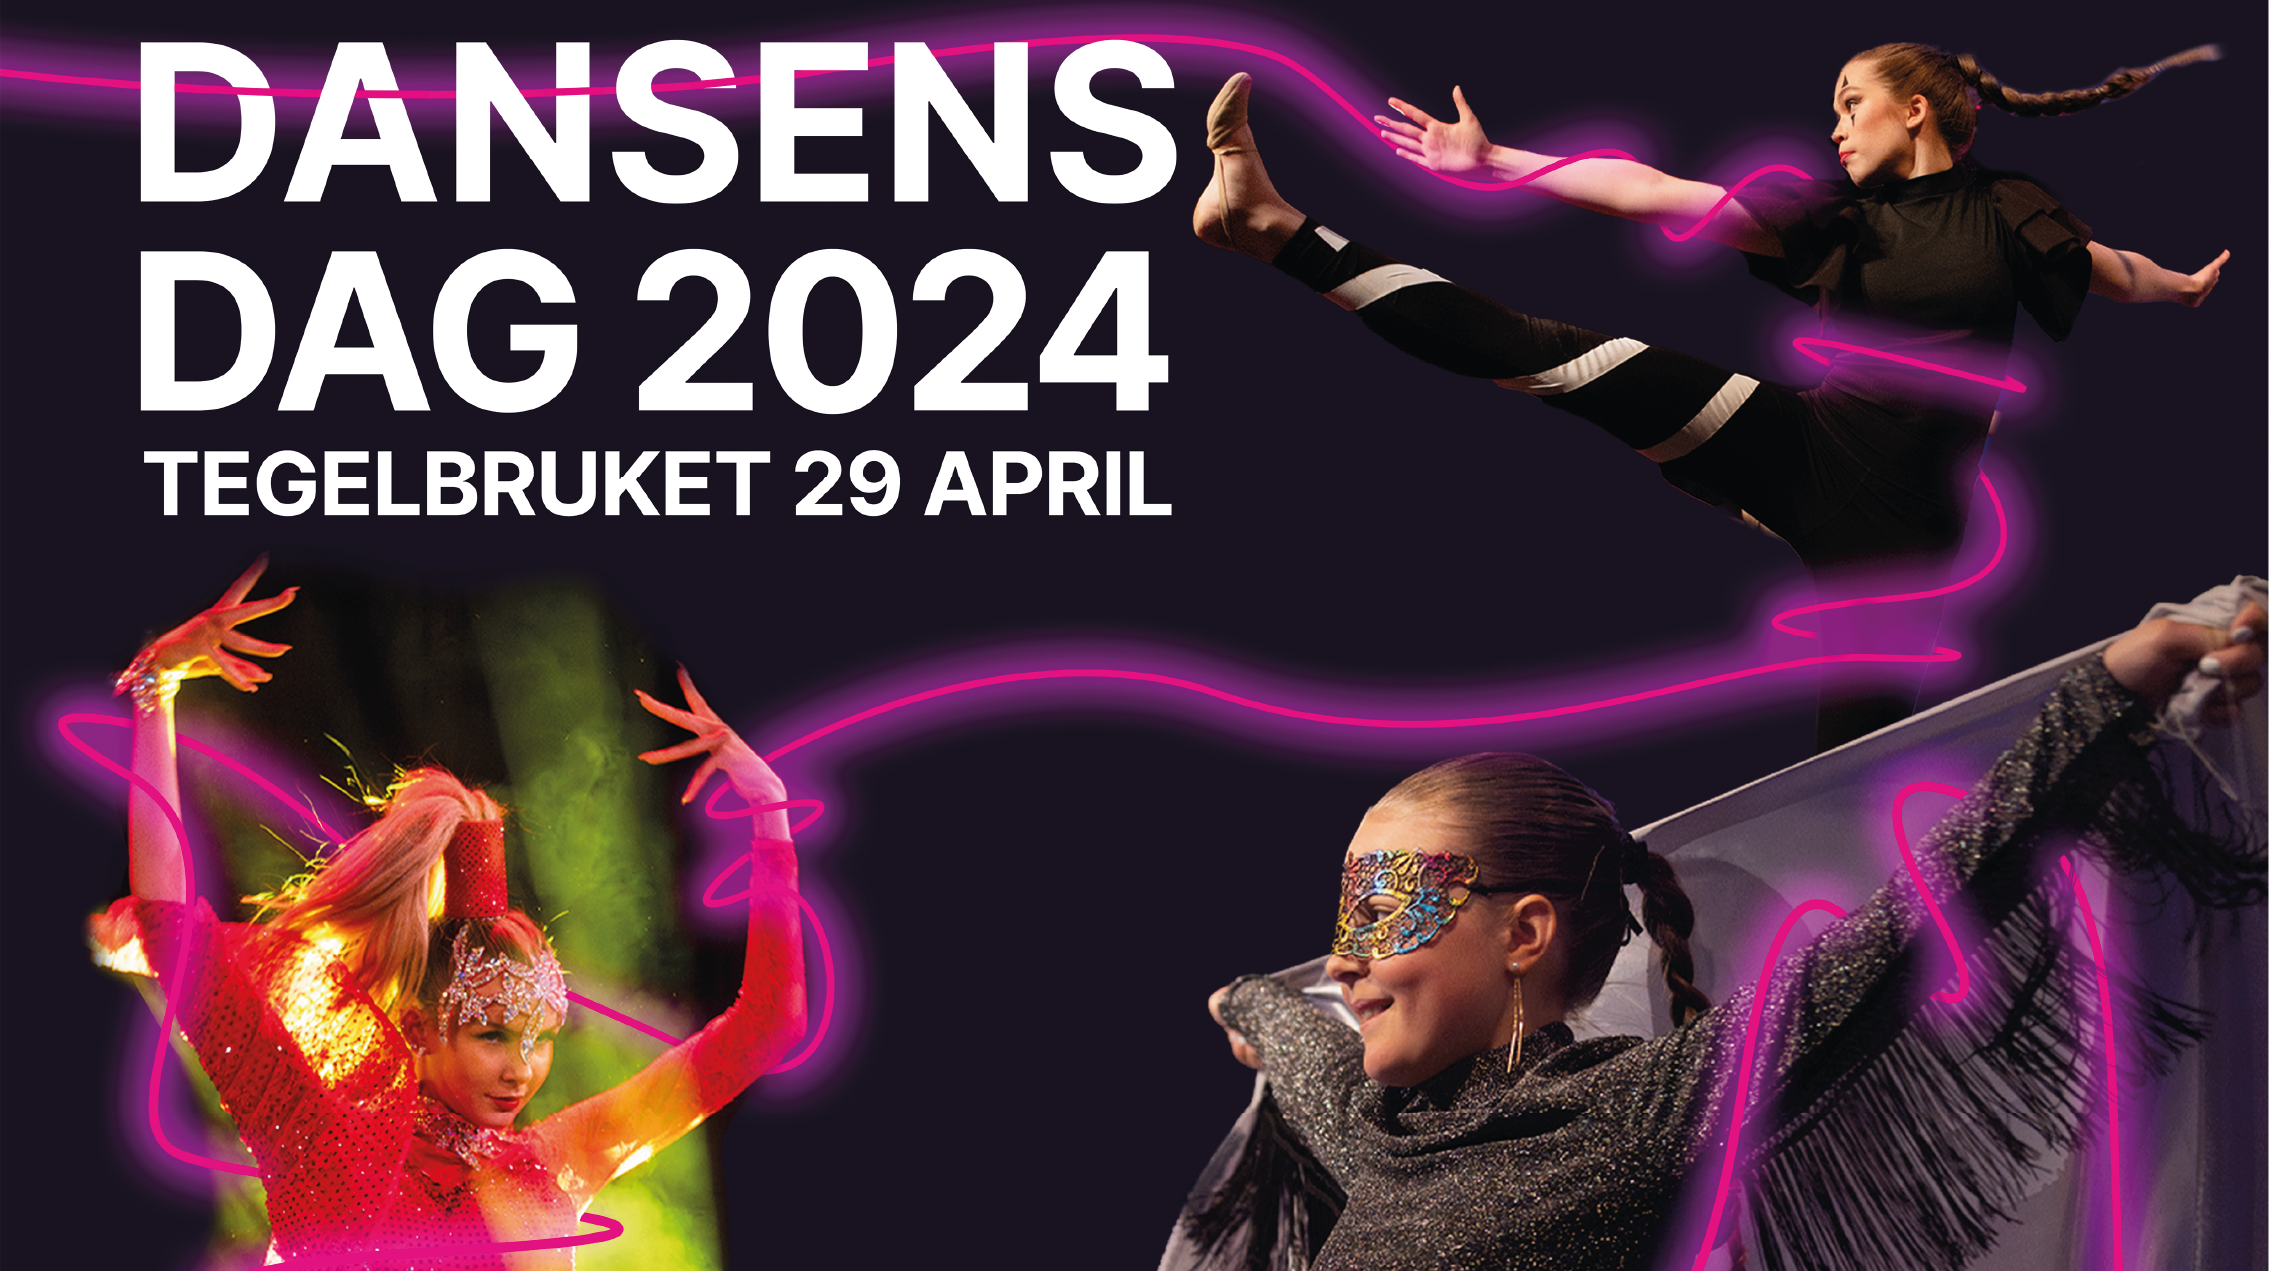 Fotocollage med tre unga dansare och texten Dansens dag 2024 Tegelbruket 29 april